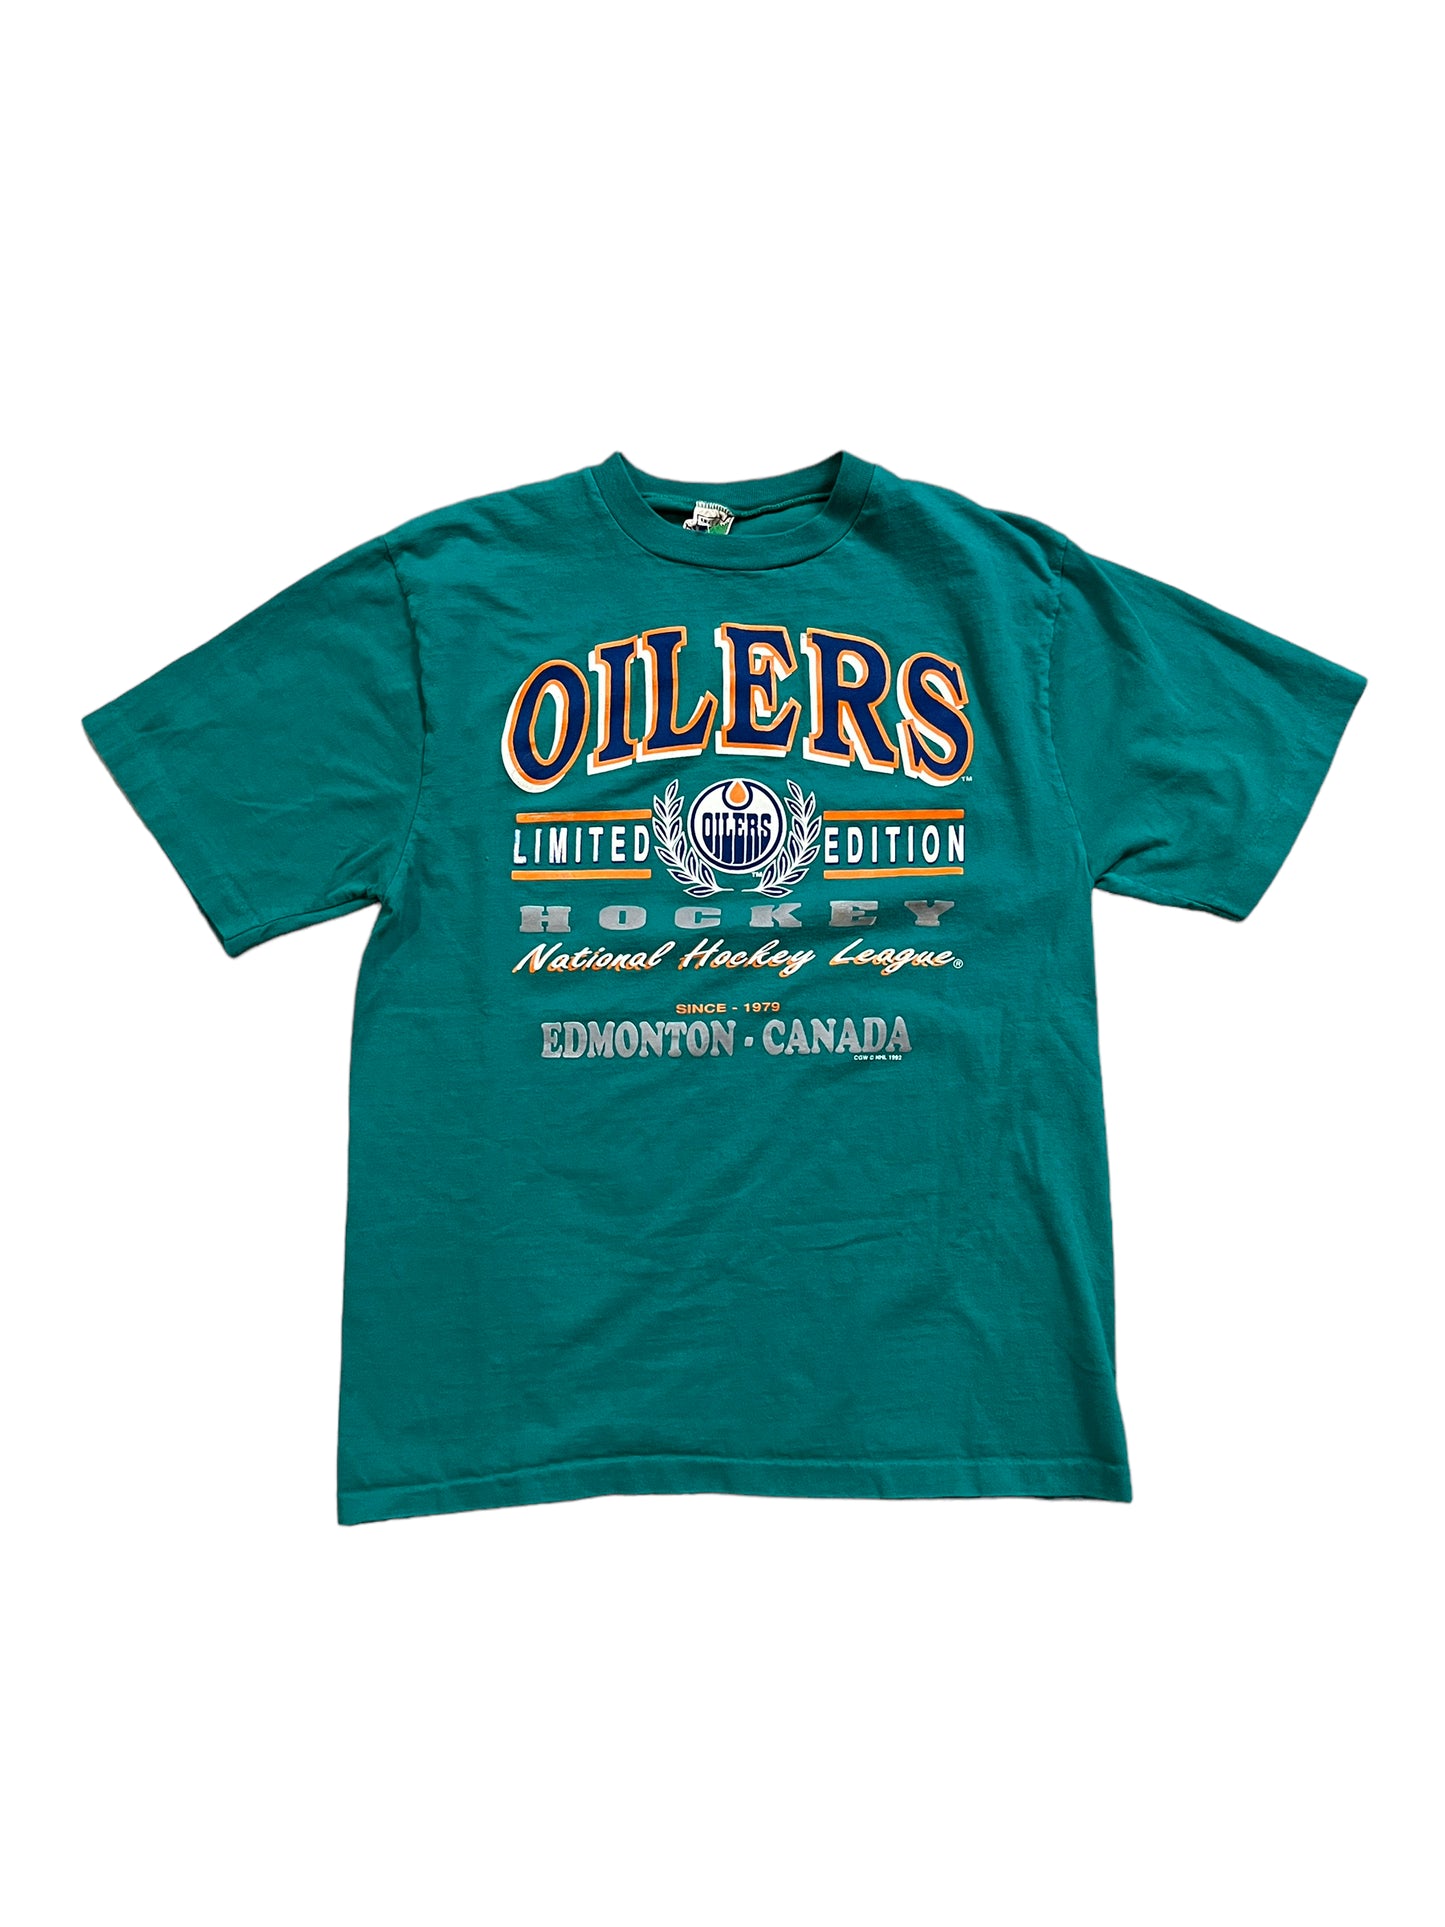 Vintage 90's Limited Edition Edmonton Oilers Tee